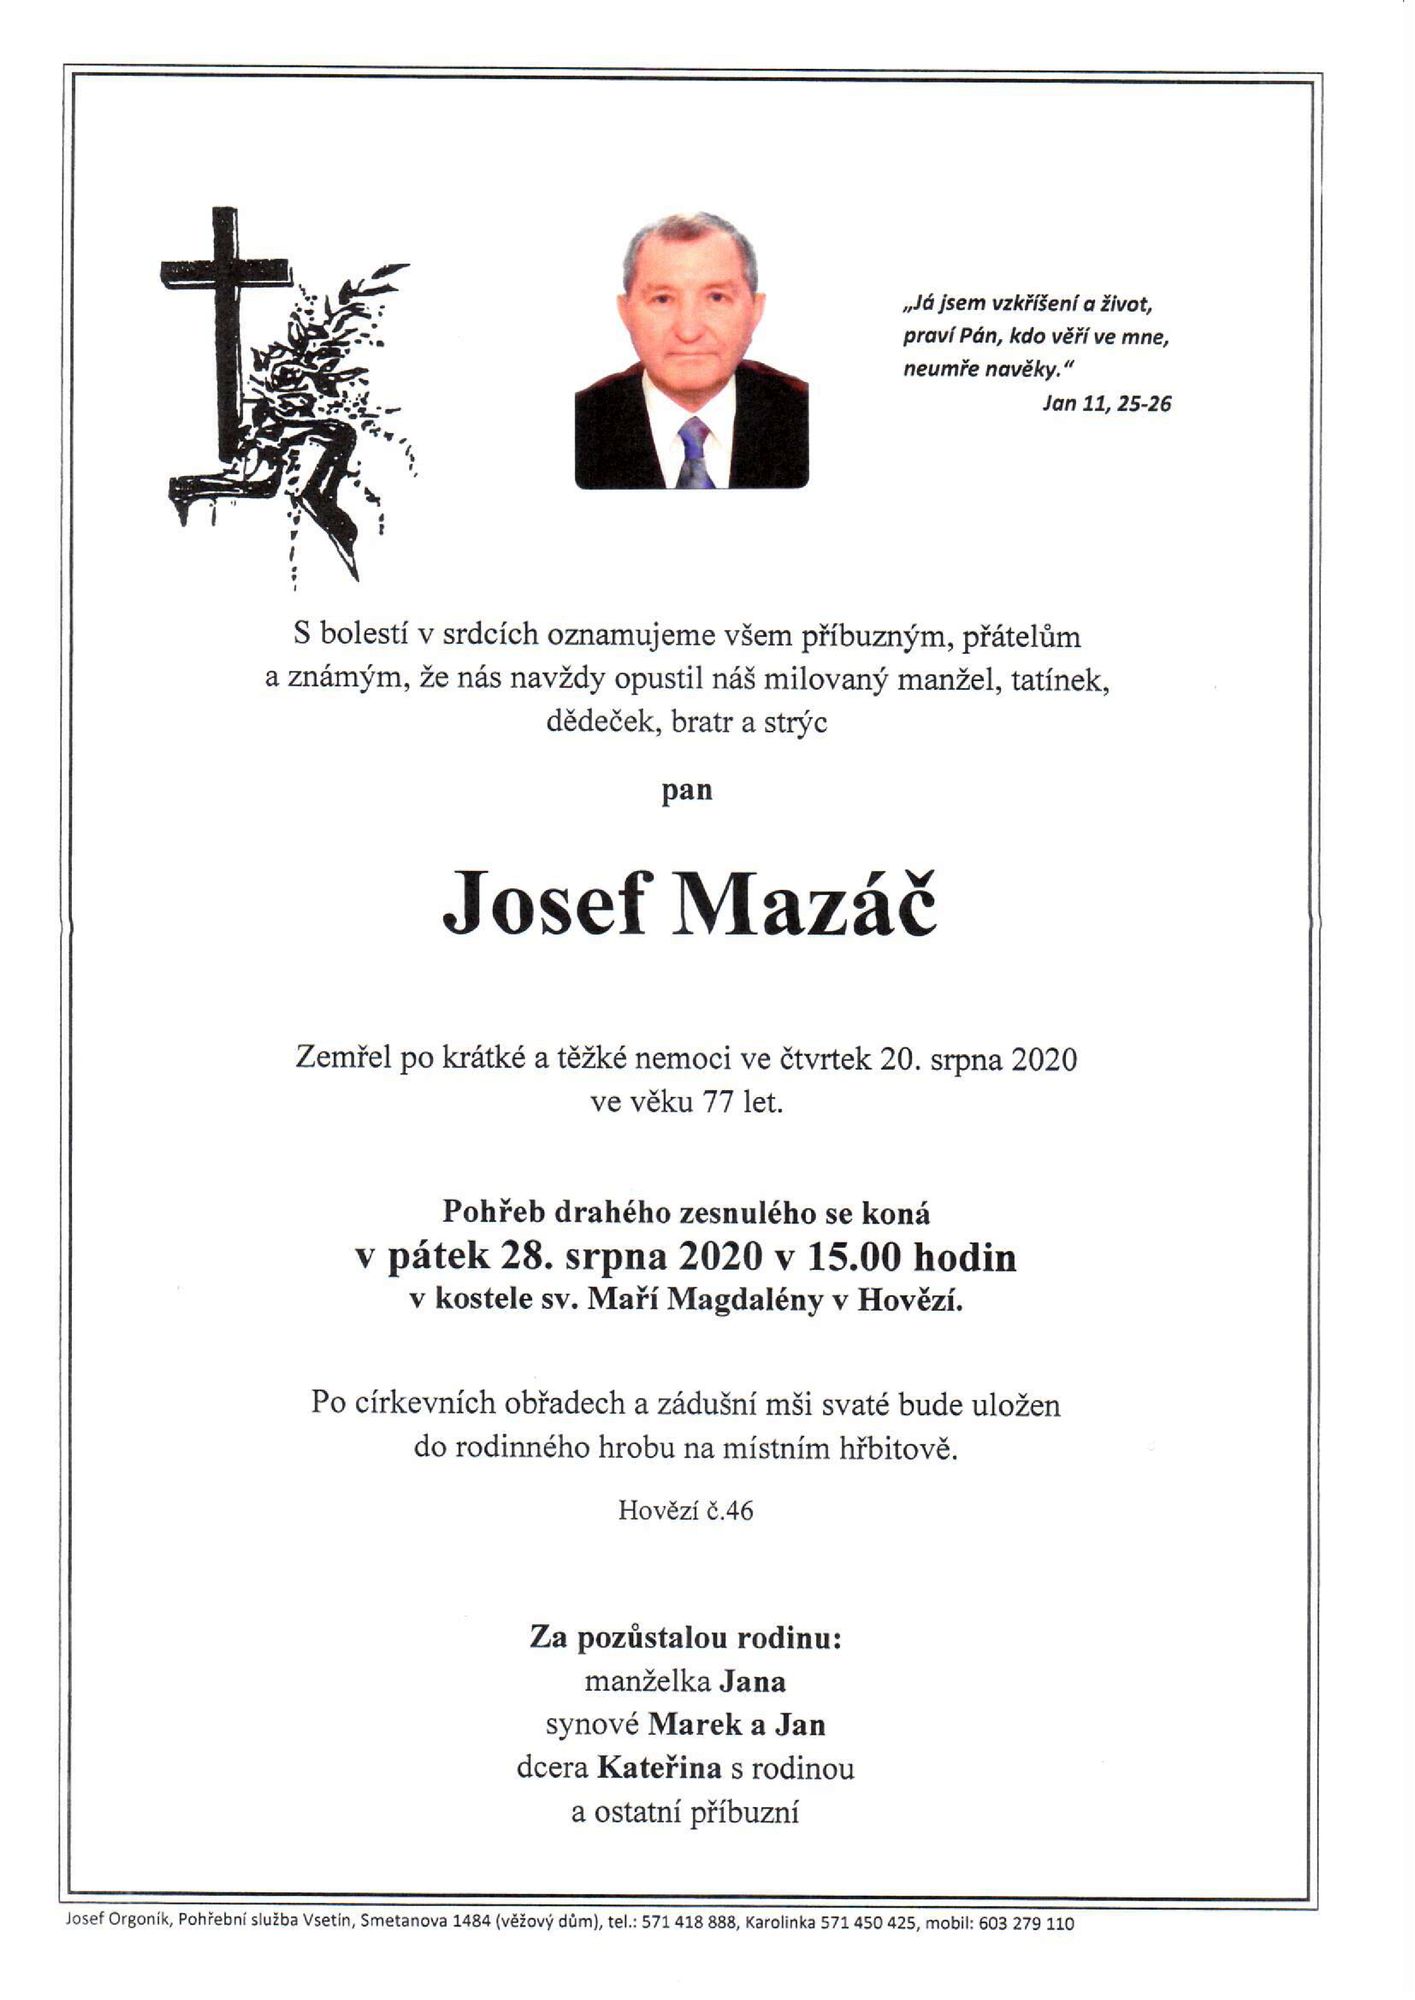 Josef Mazáč